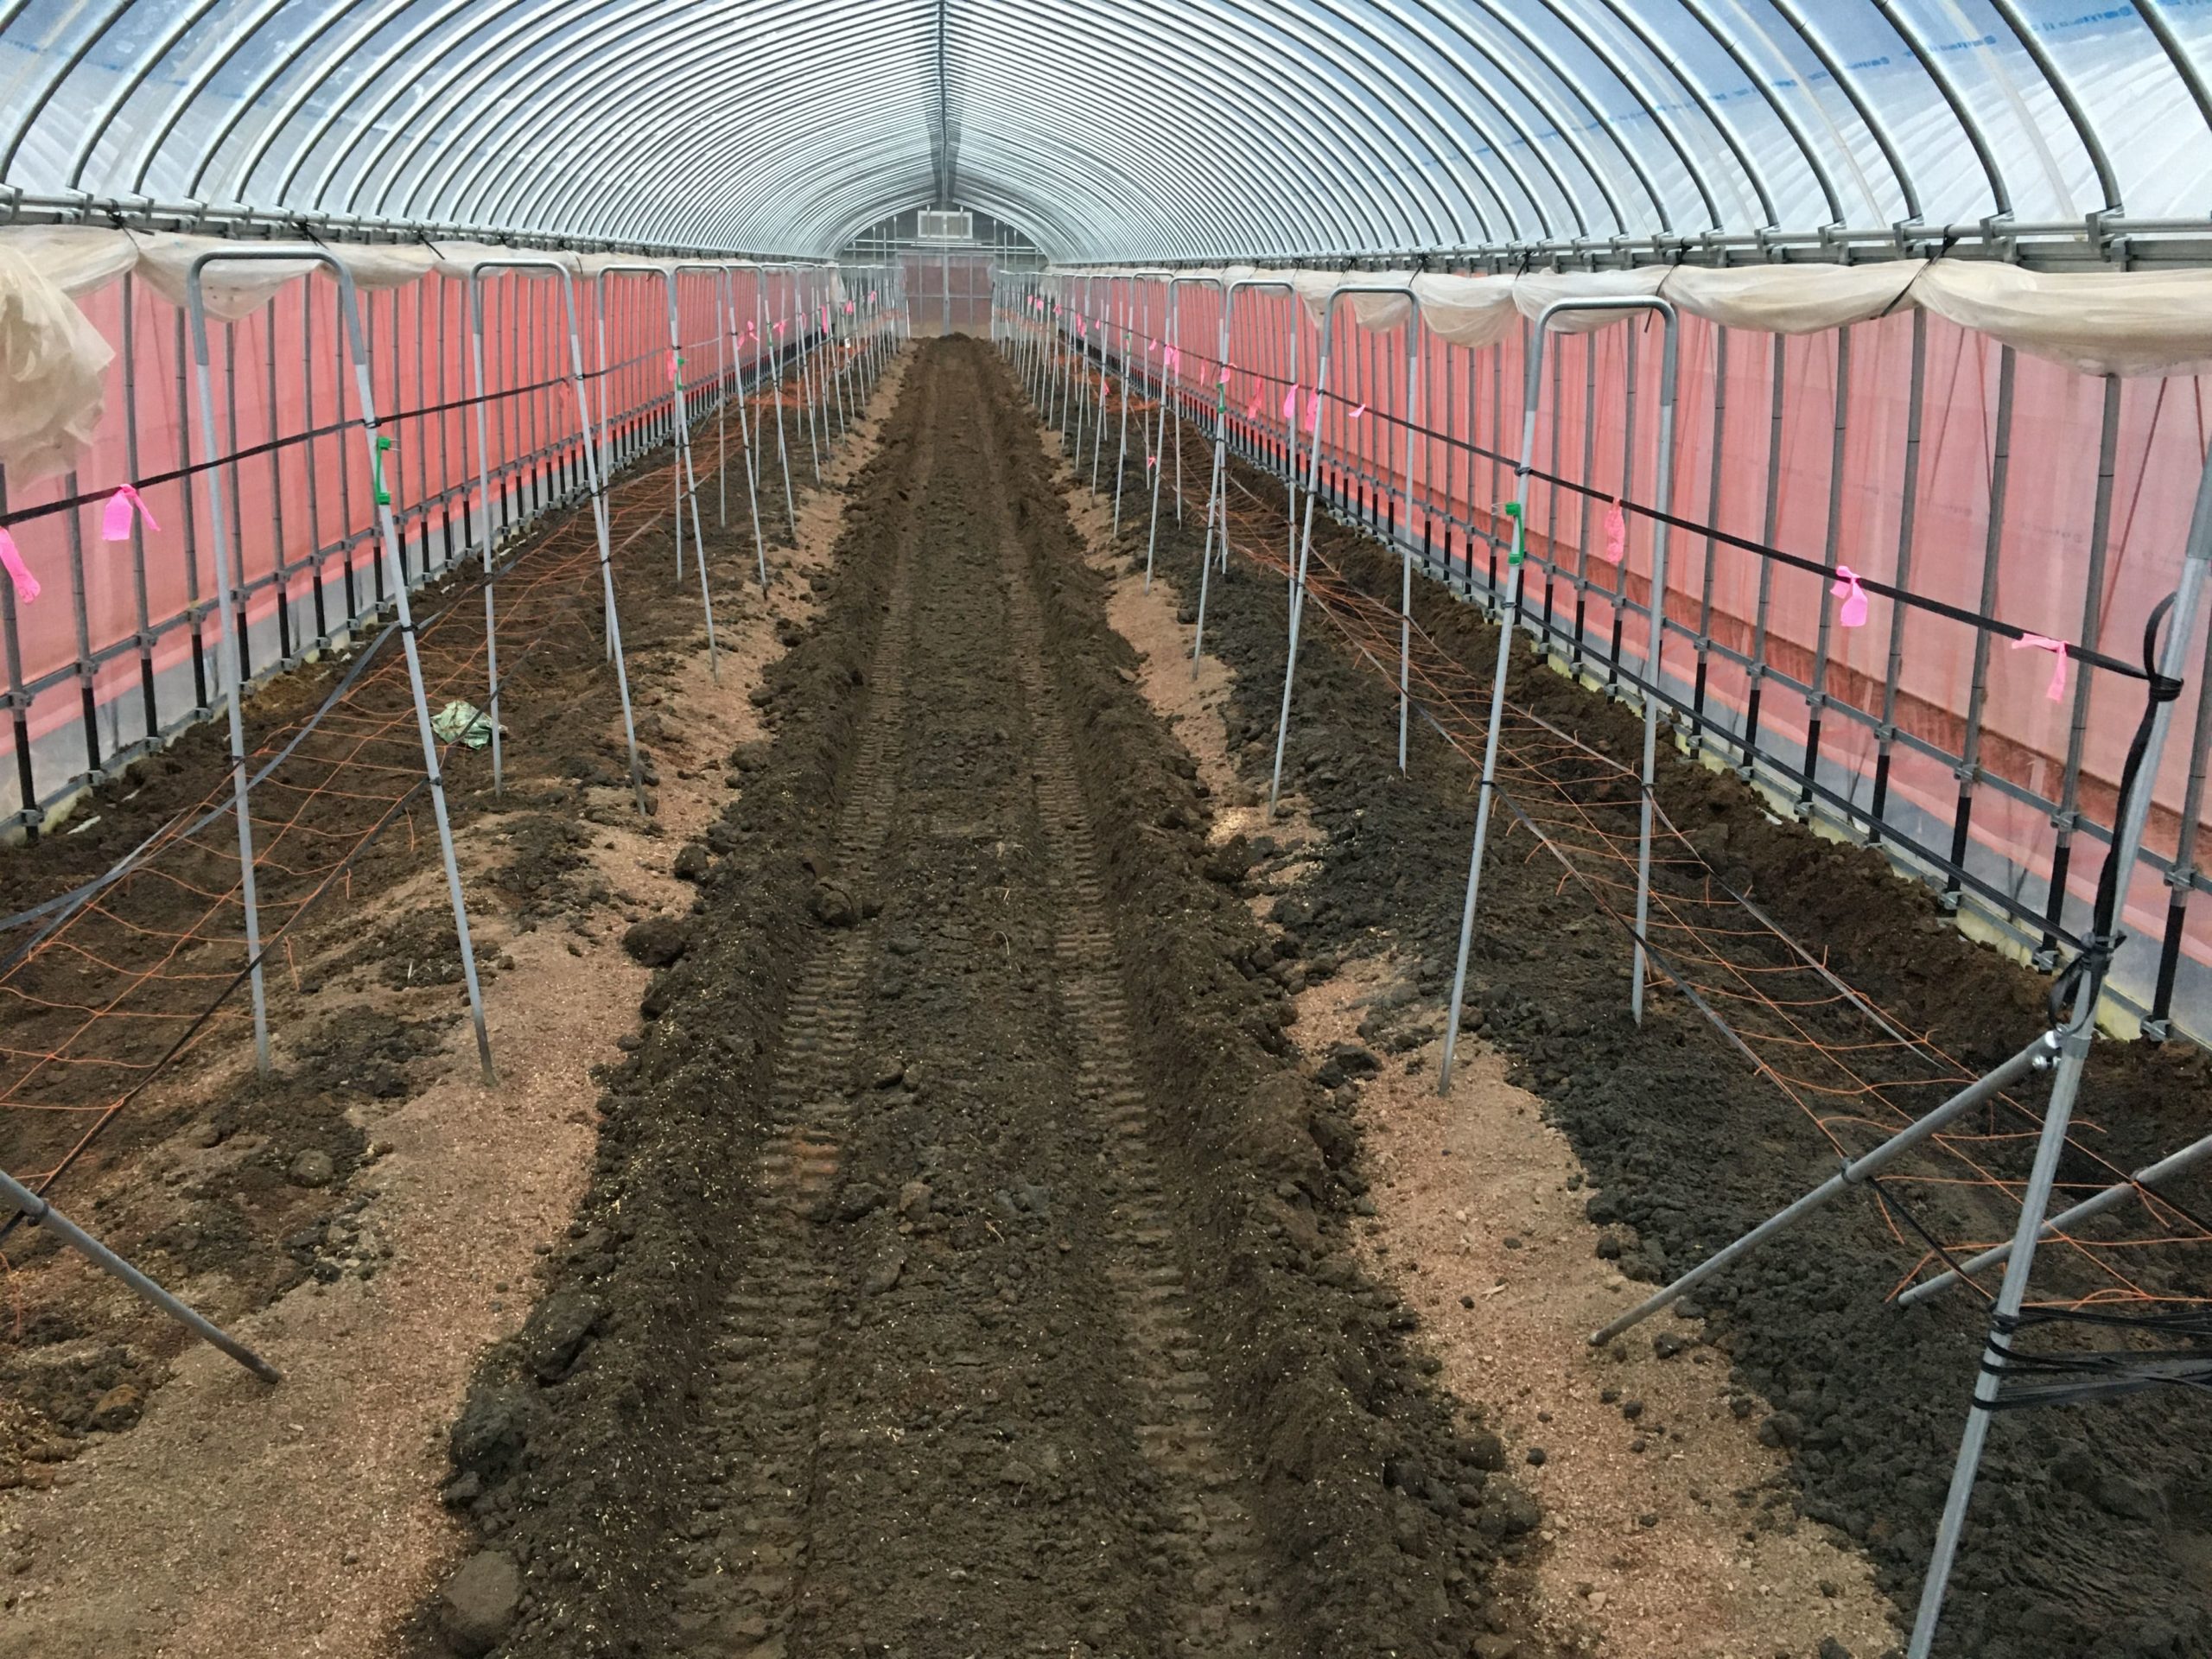 定植後の土壌改良で増収する方法 / アスパラガス栽培 | 農業応援サイト ISHIZUE